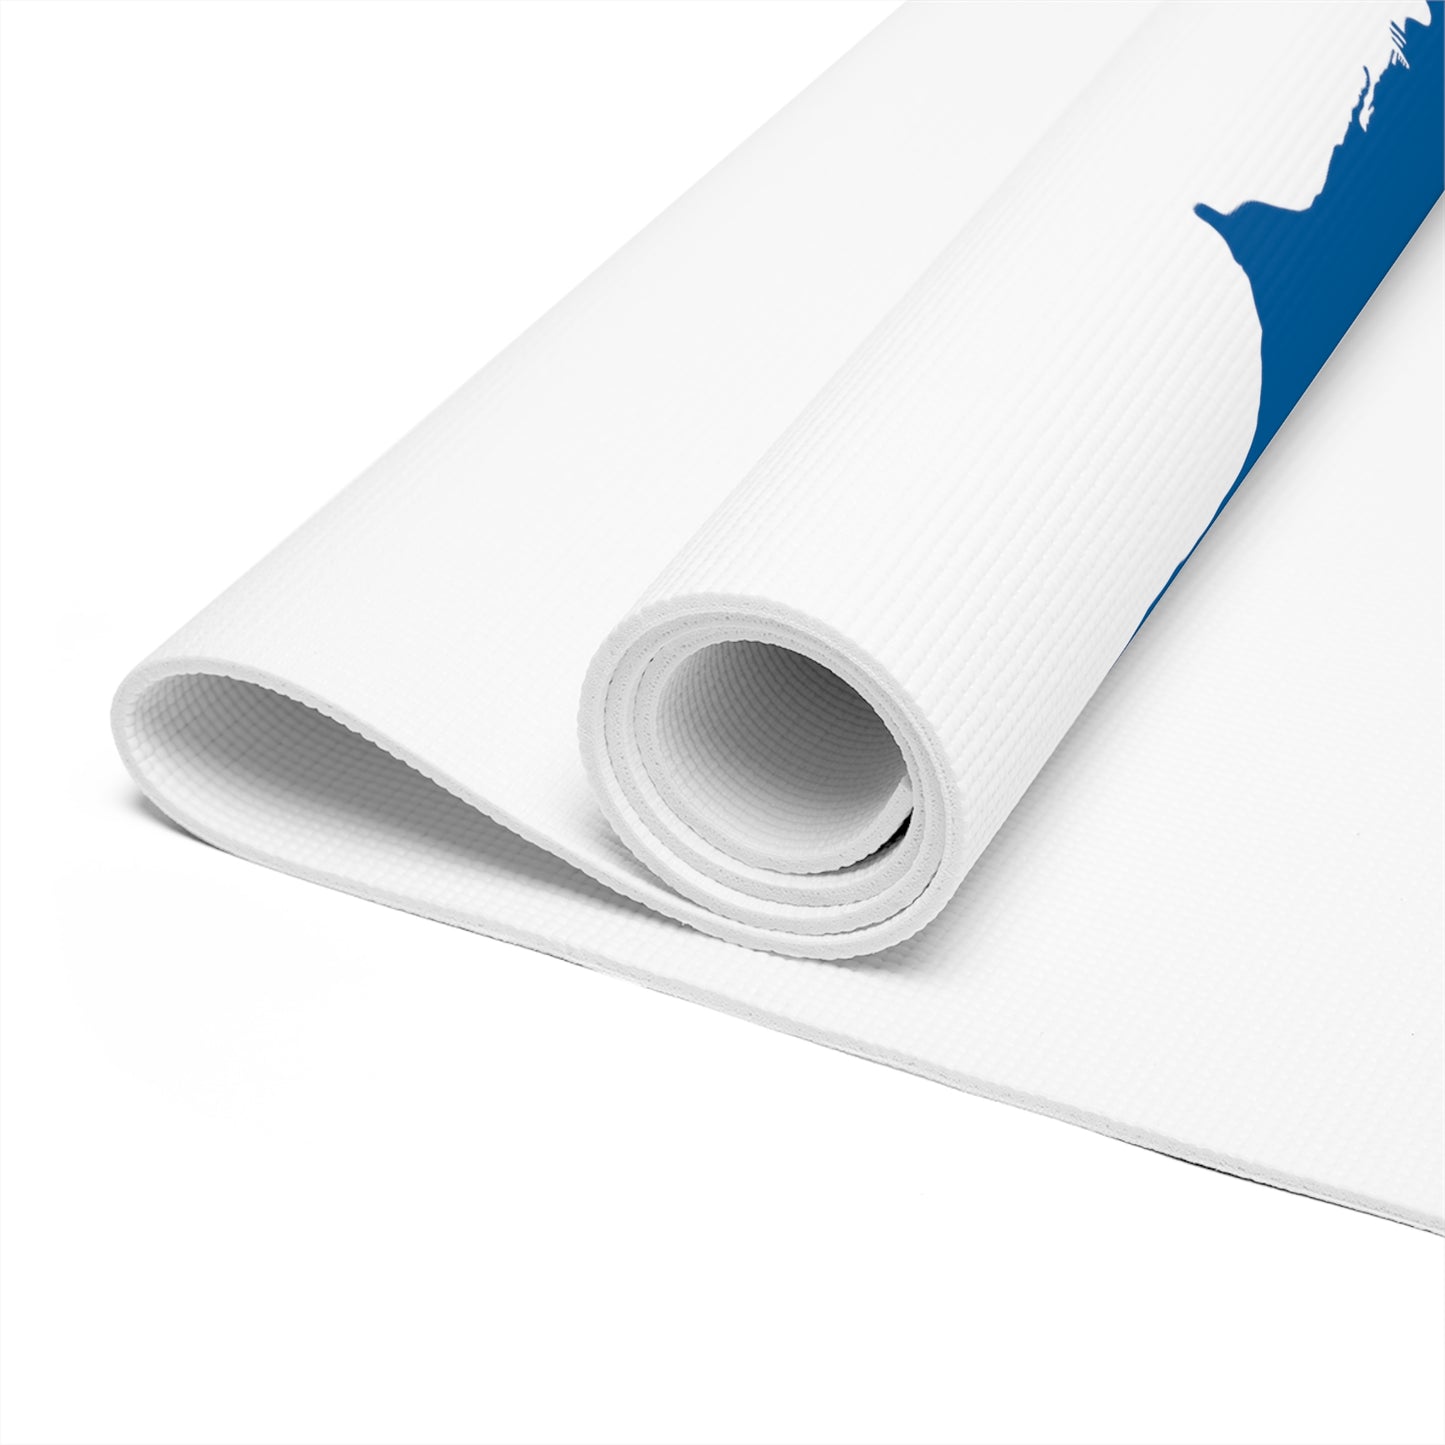 White Foam Yoga Mat - San Francisco Blue